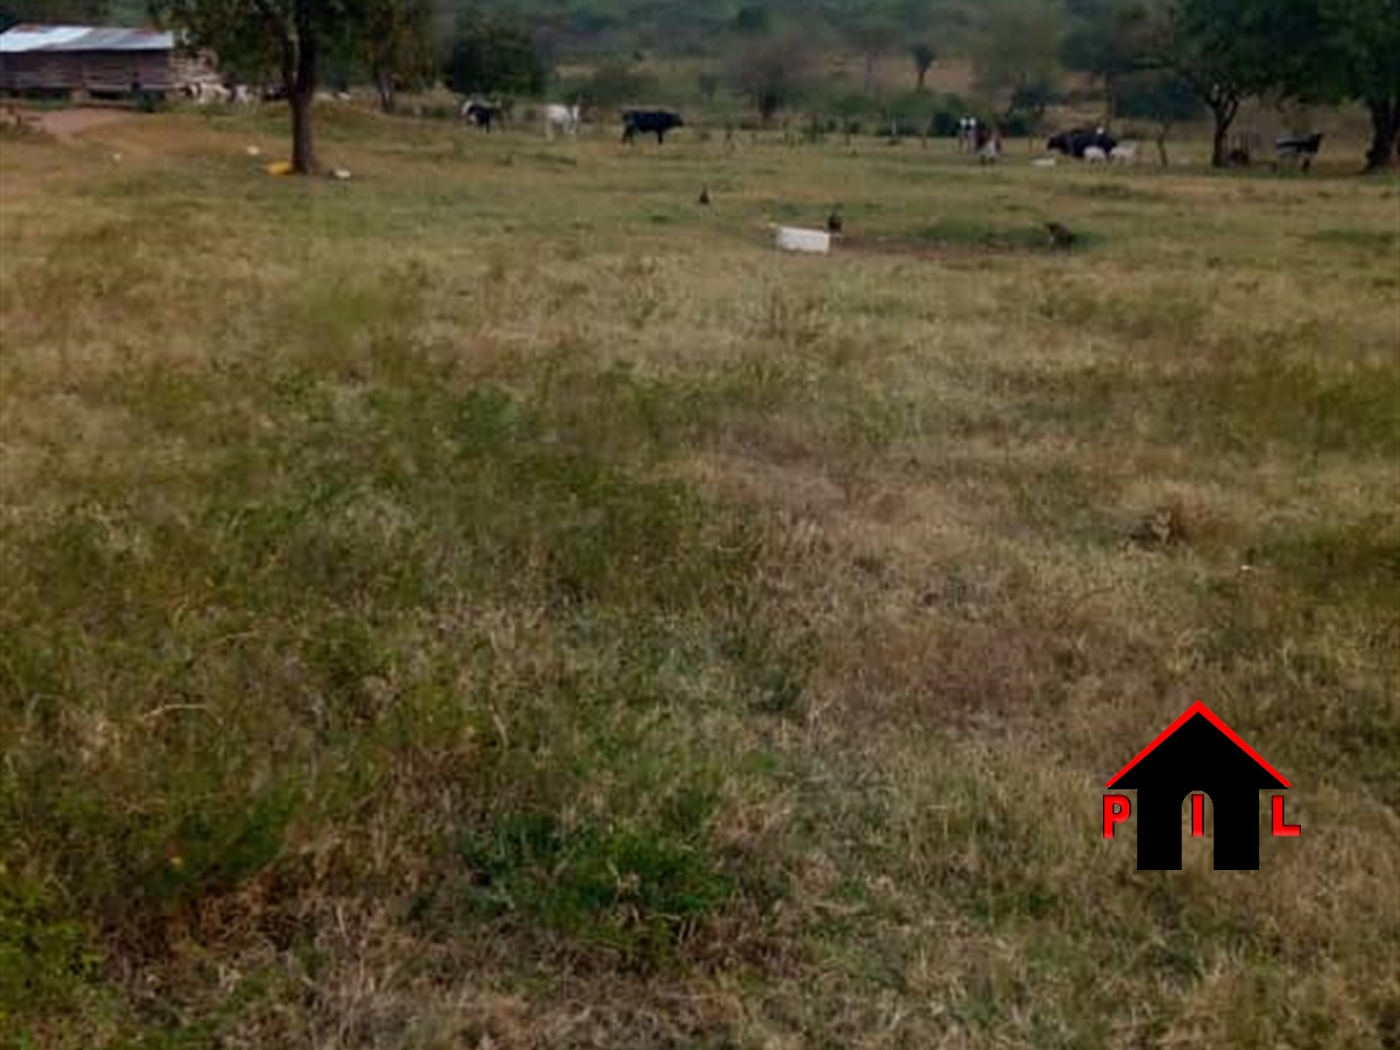 Commercial Land for sale in Buseruka Hoima